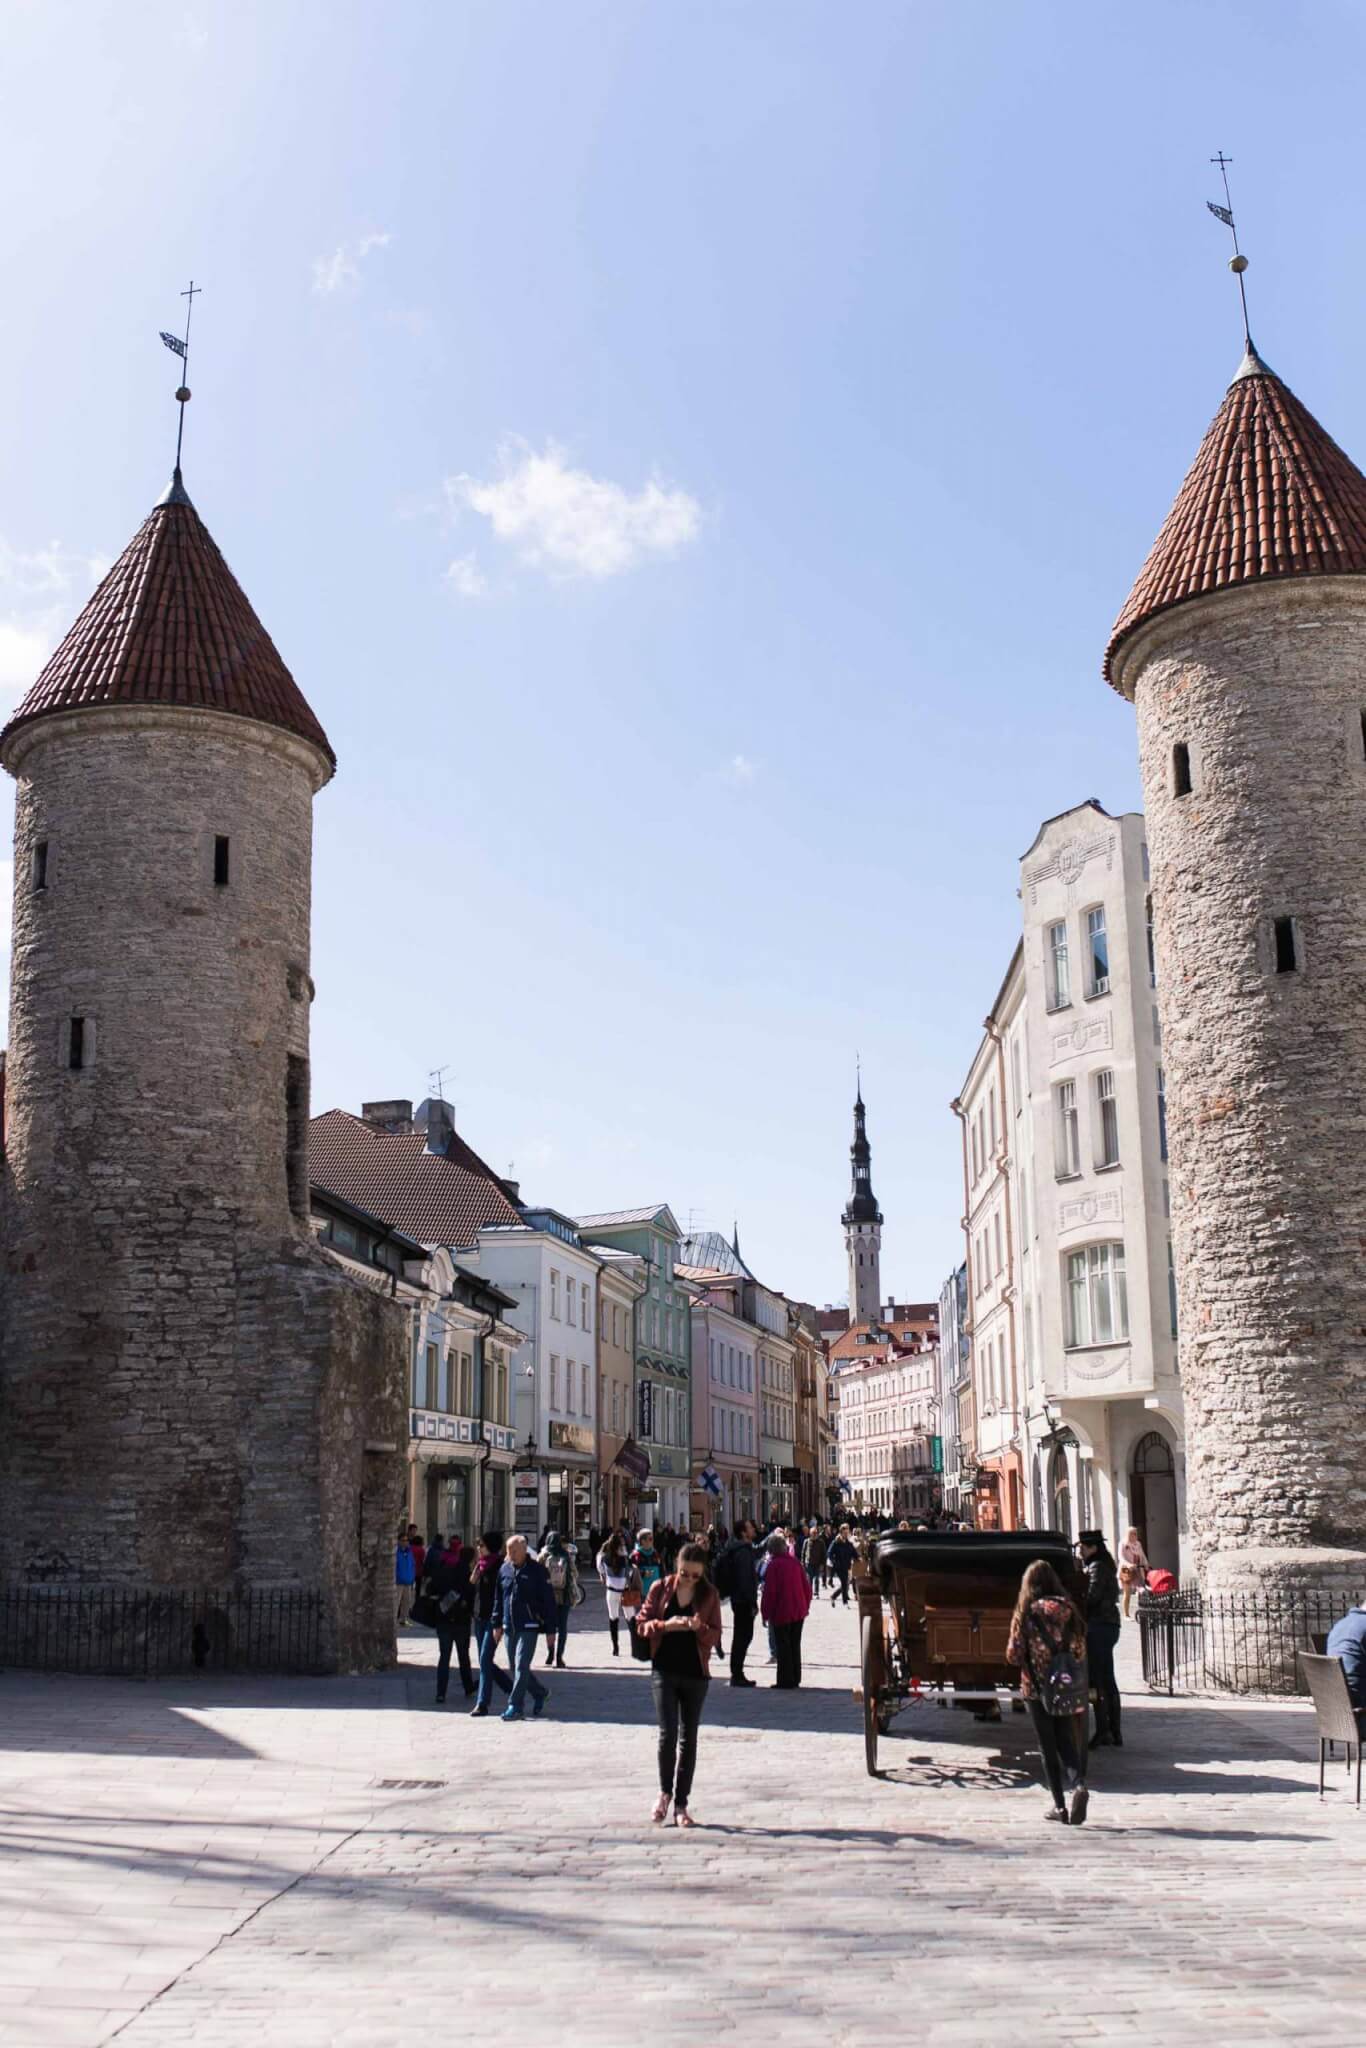 A 48-hour guide to Tallinn, Estonia